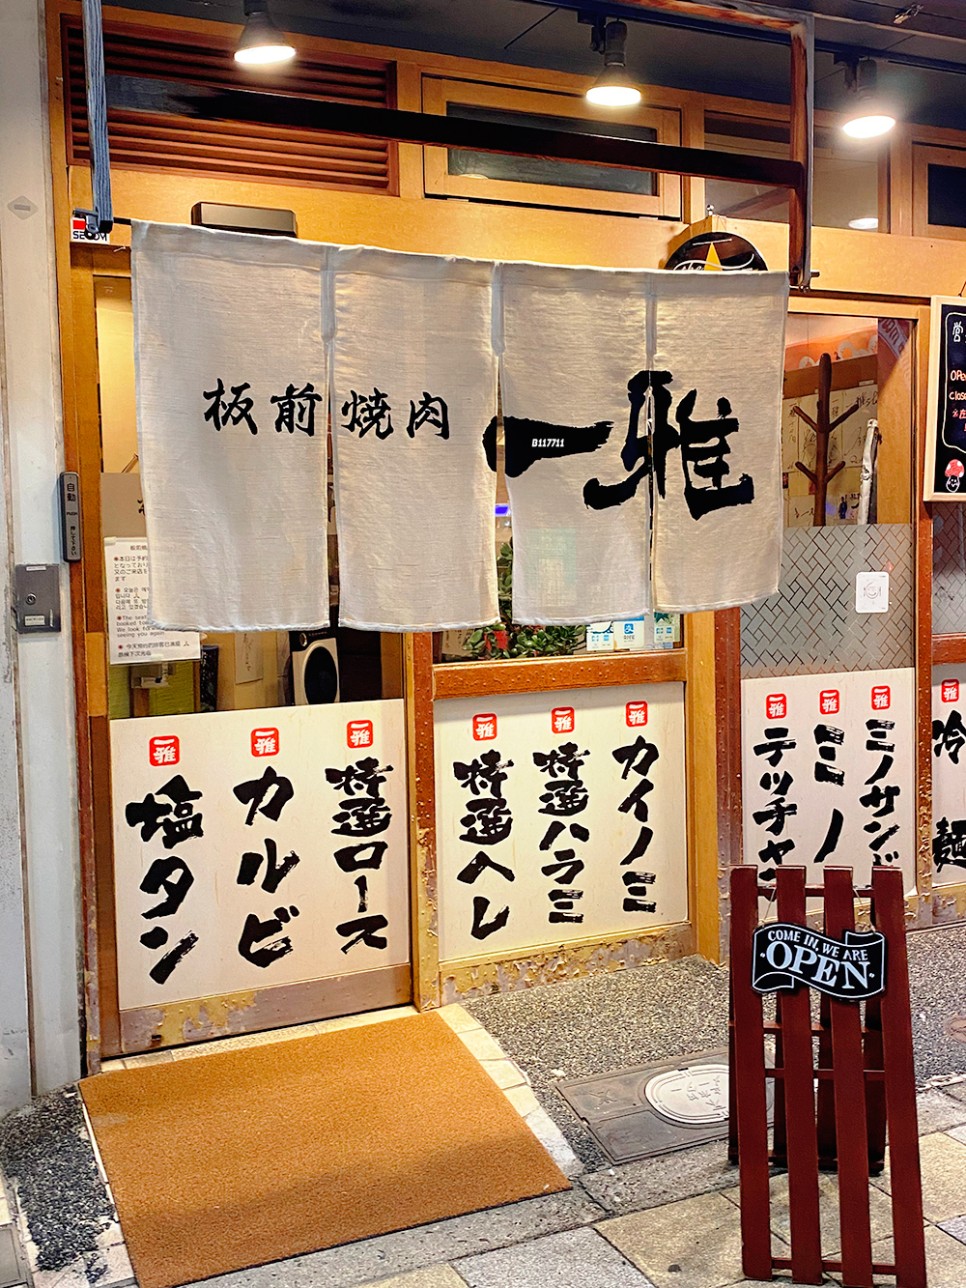 오사카 야끼니꾸 맛집 도톤보리 이타마에 야키니쿠 이치마사 와규 오마카세